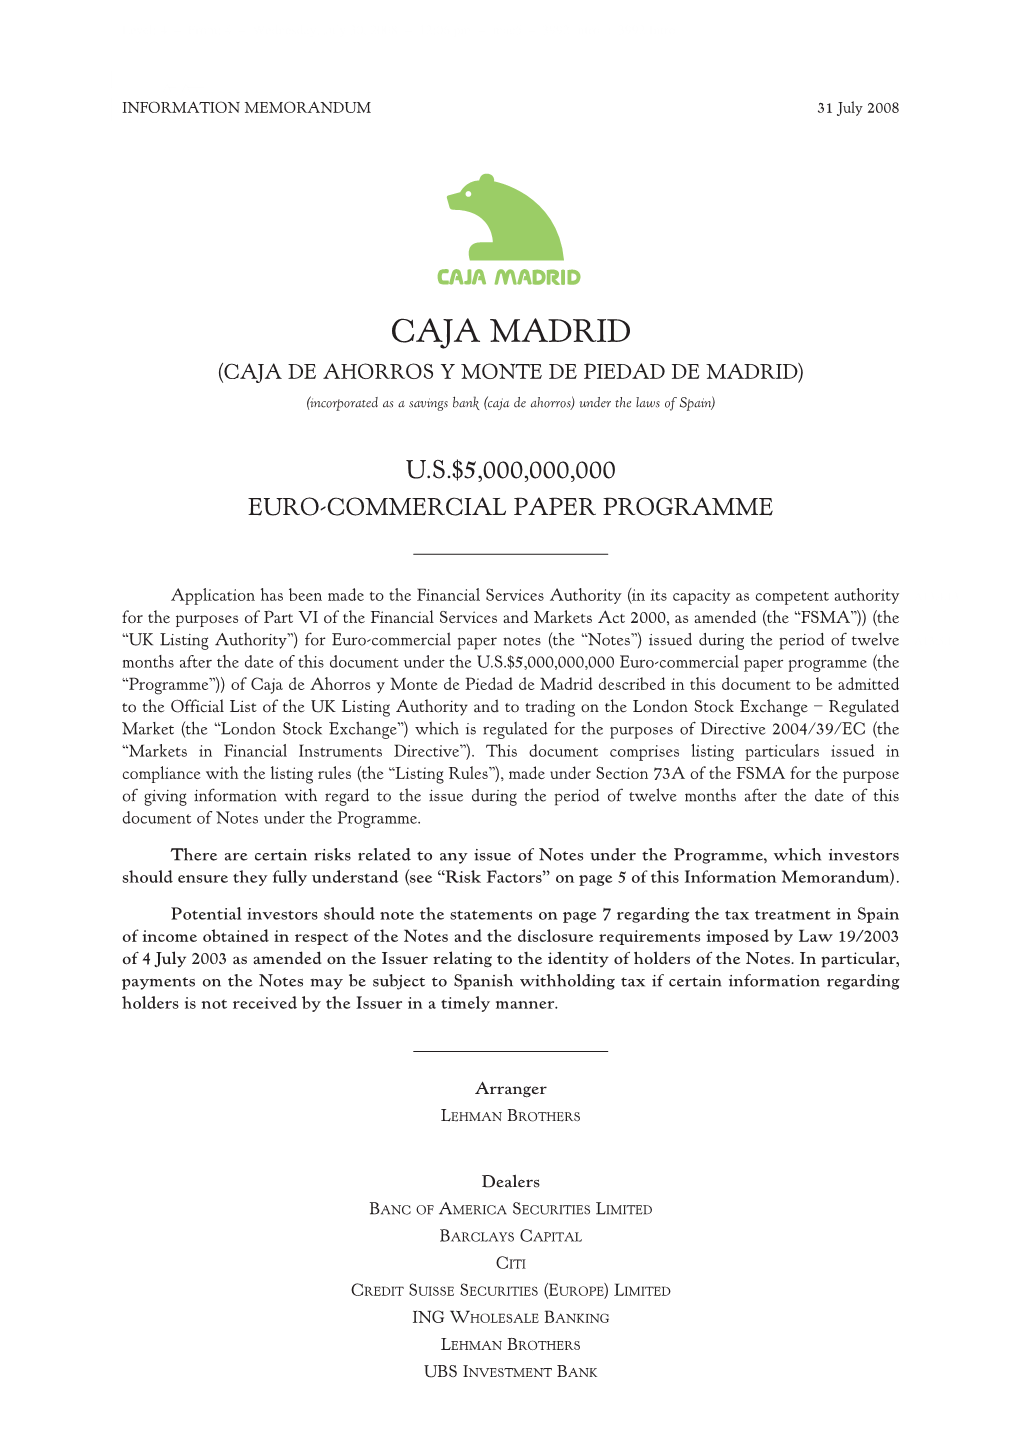 CAJA MADRID (CAJA DE AHORROS Y MONTE DE PIEDAD DE MADRID) (Incorporated As a Savings Bank (Caja De Ahorros) Under the Laws of Spain)